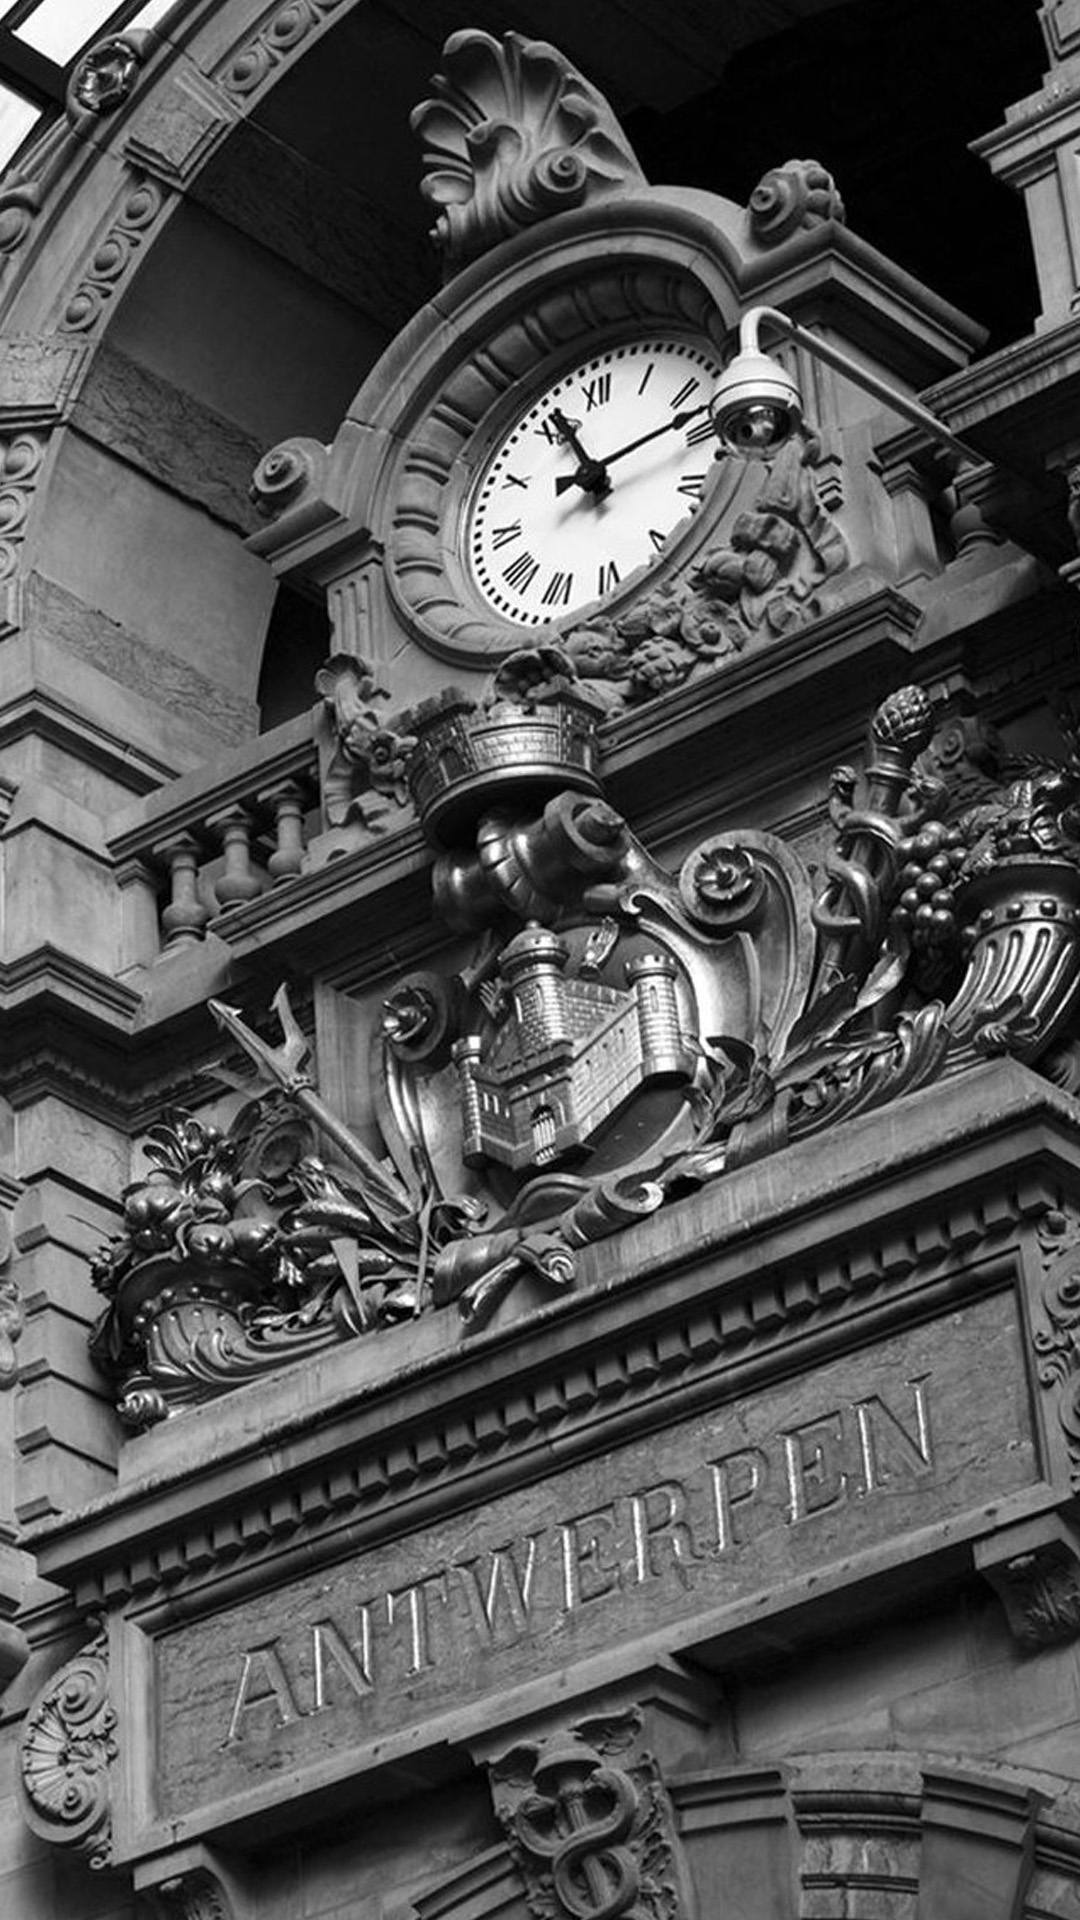 Antwerpen Clock